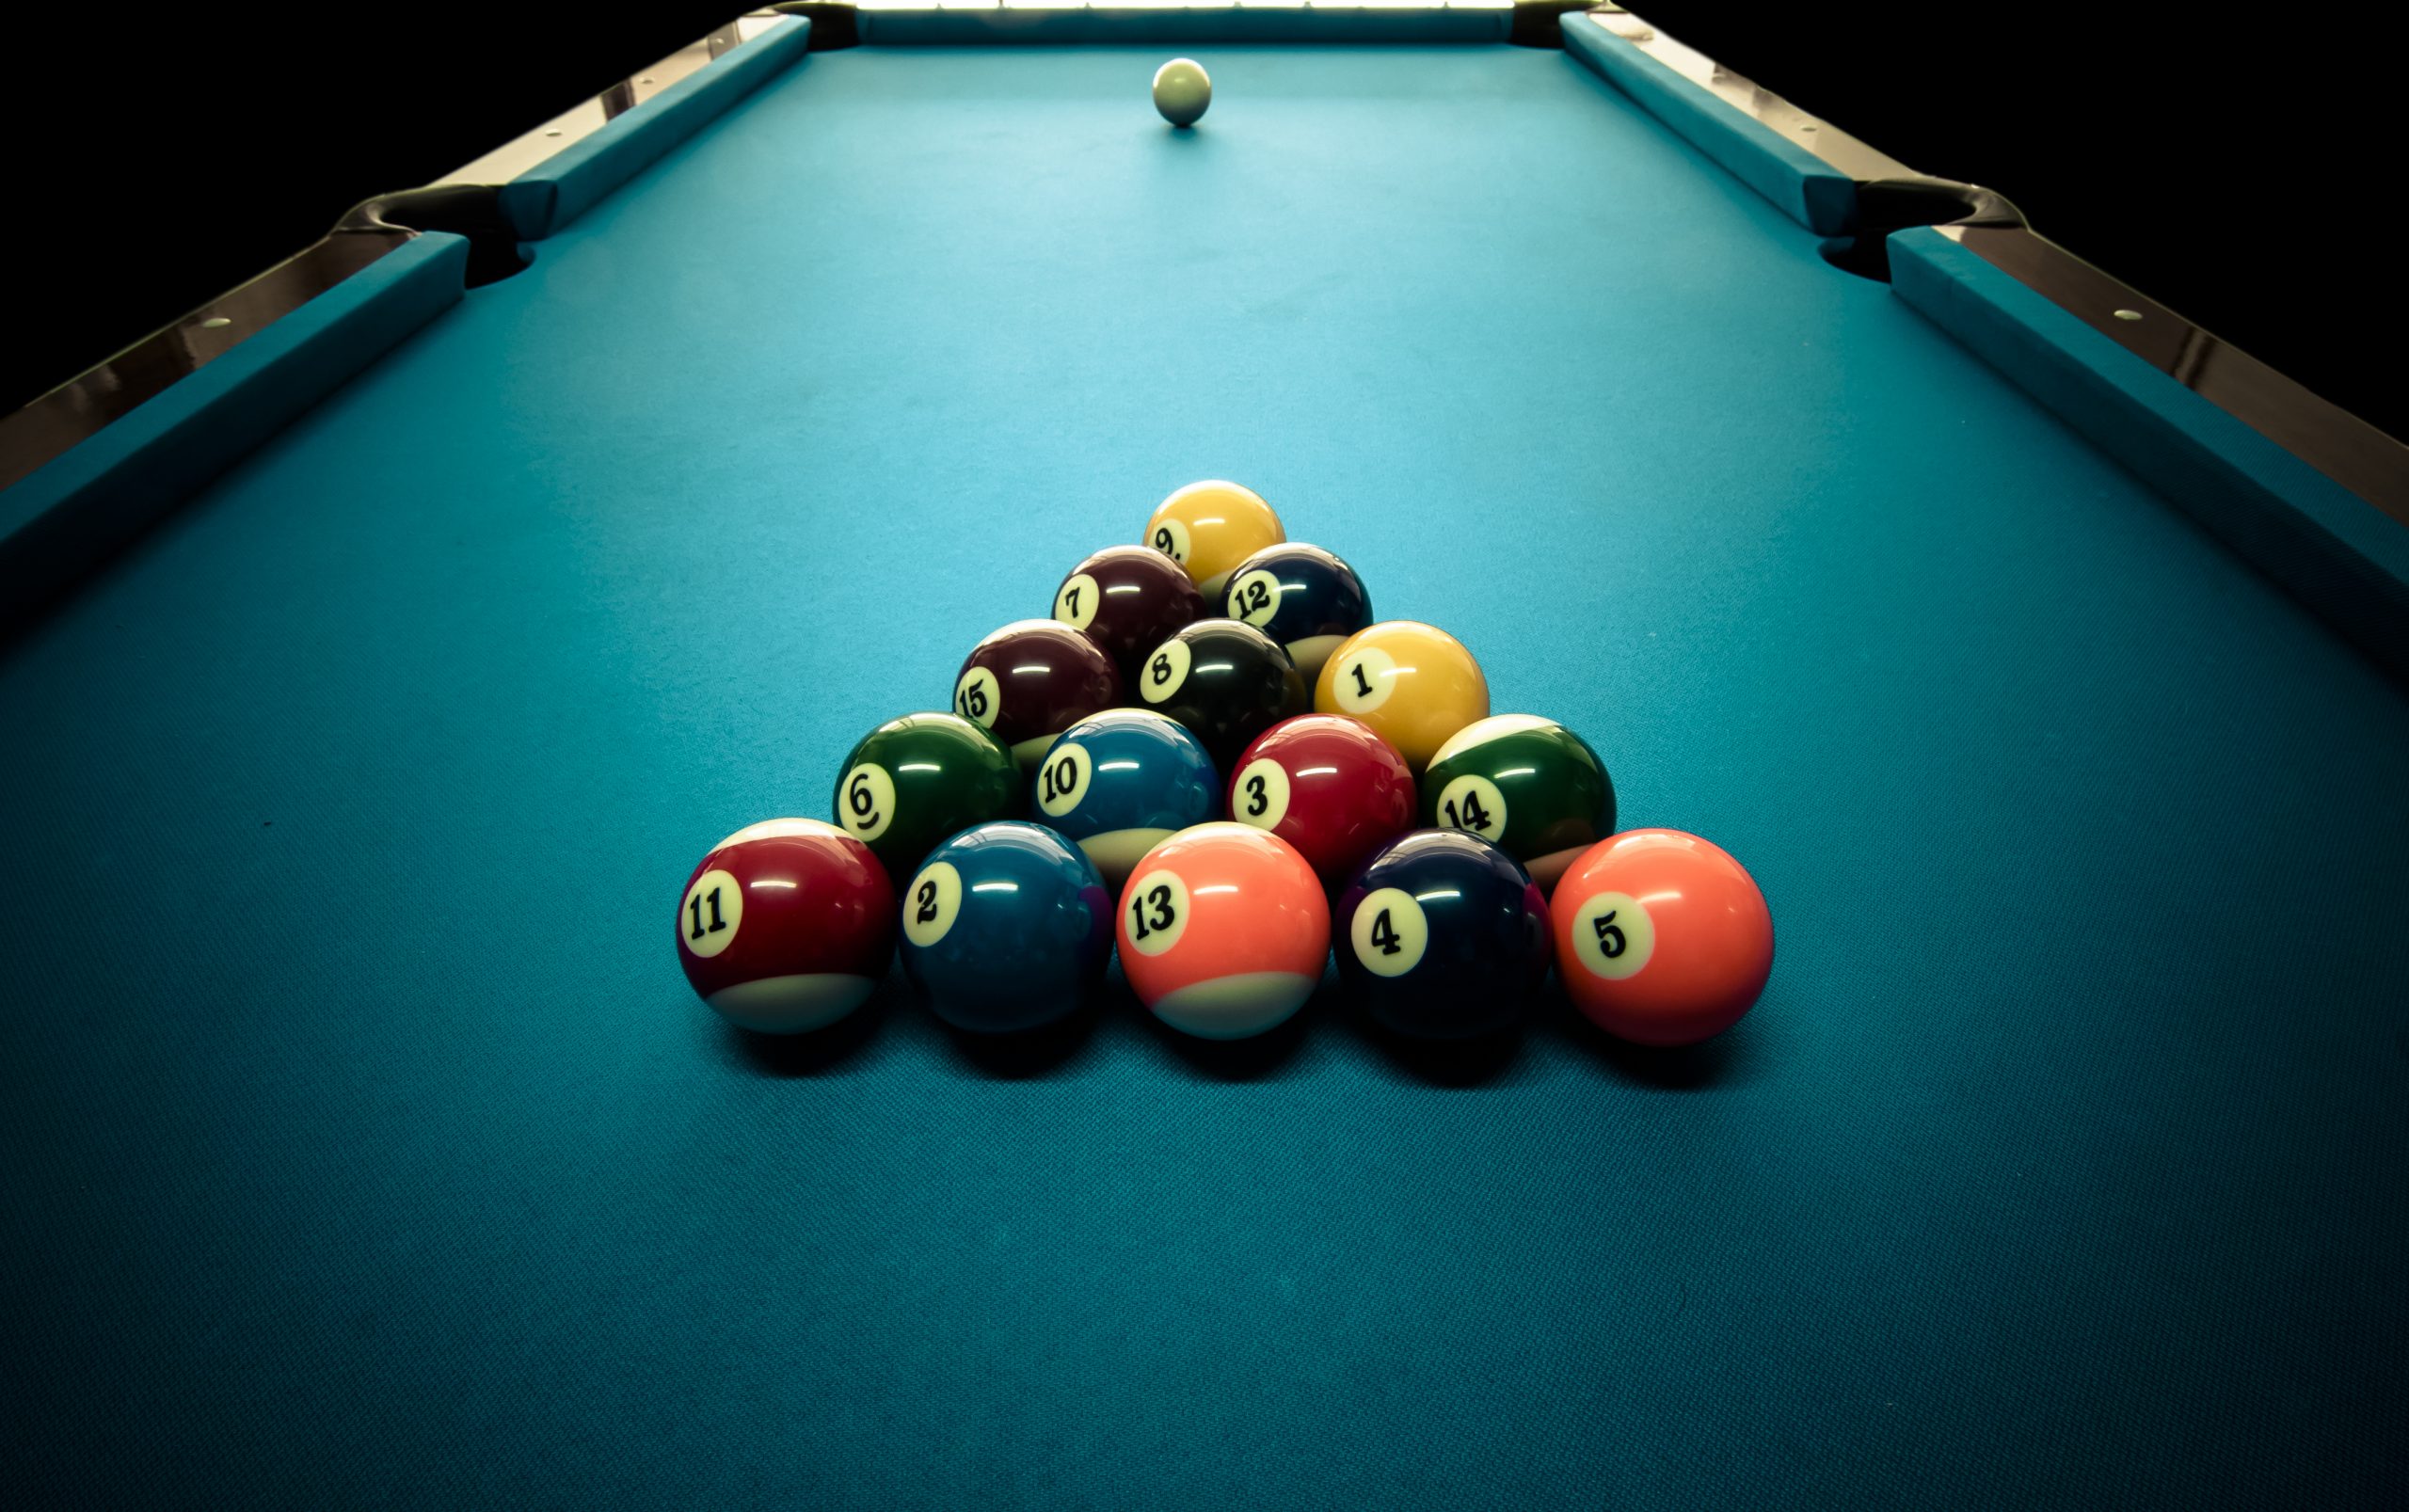 tai-game-8-ball-pool